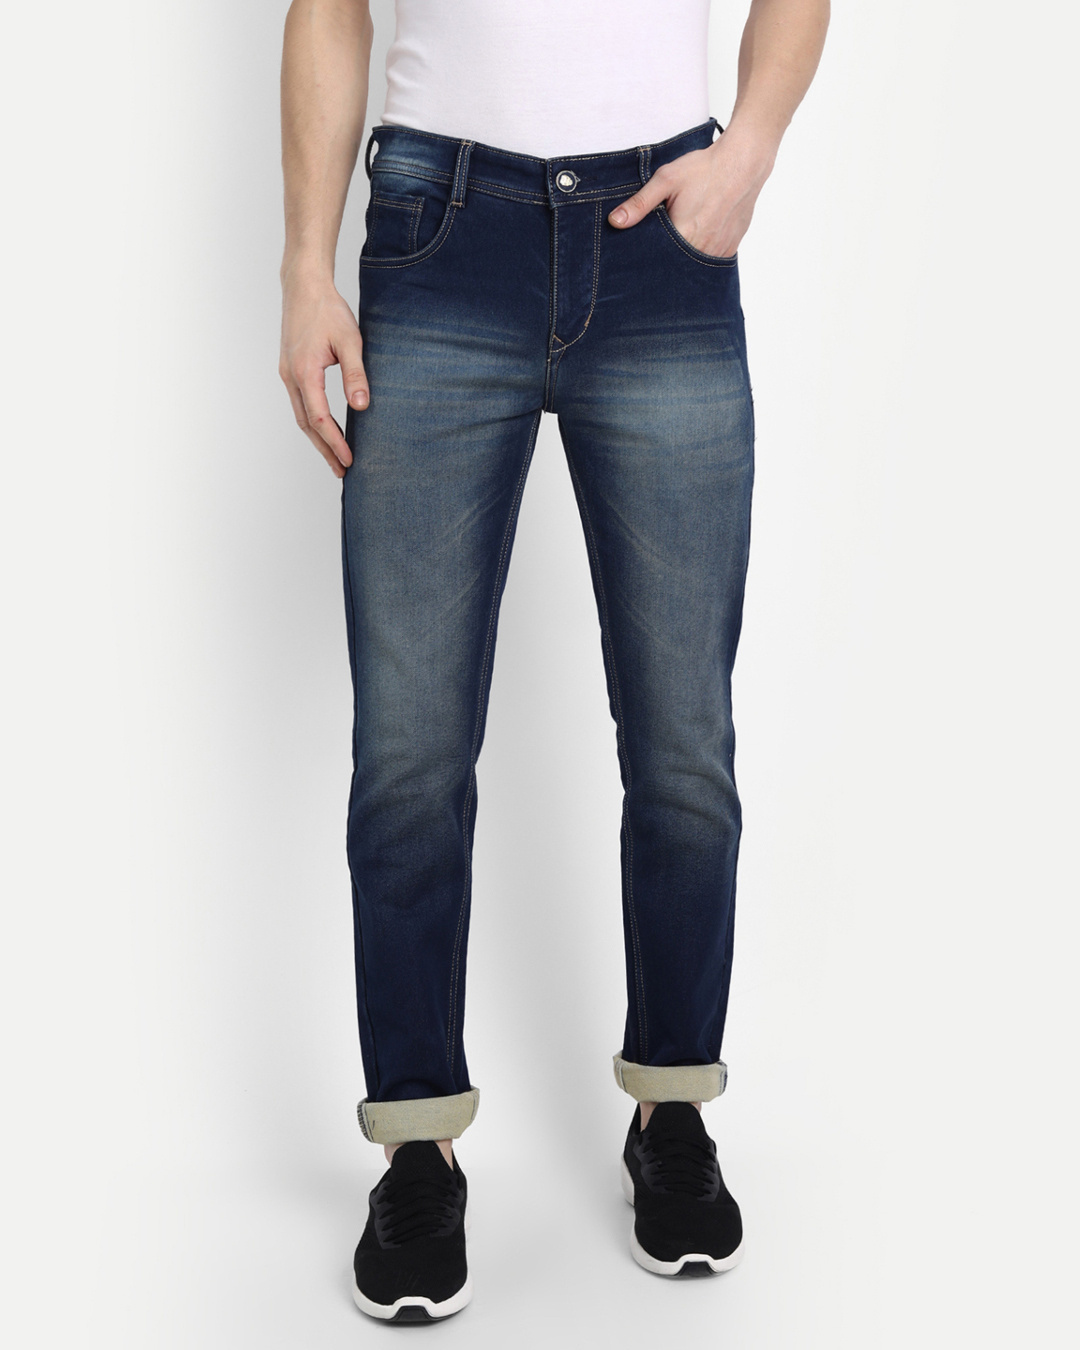 Buy Men's Blue Solid Slim Fit Denim Jeans for Men Blue Online at Bewakoof